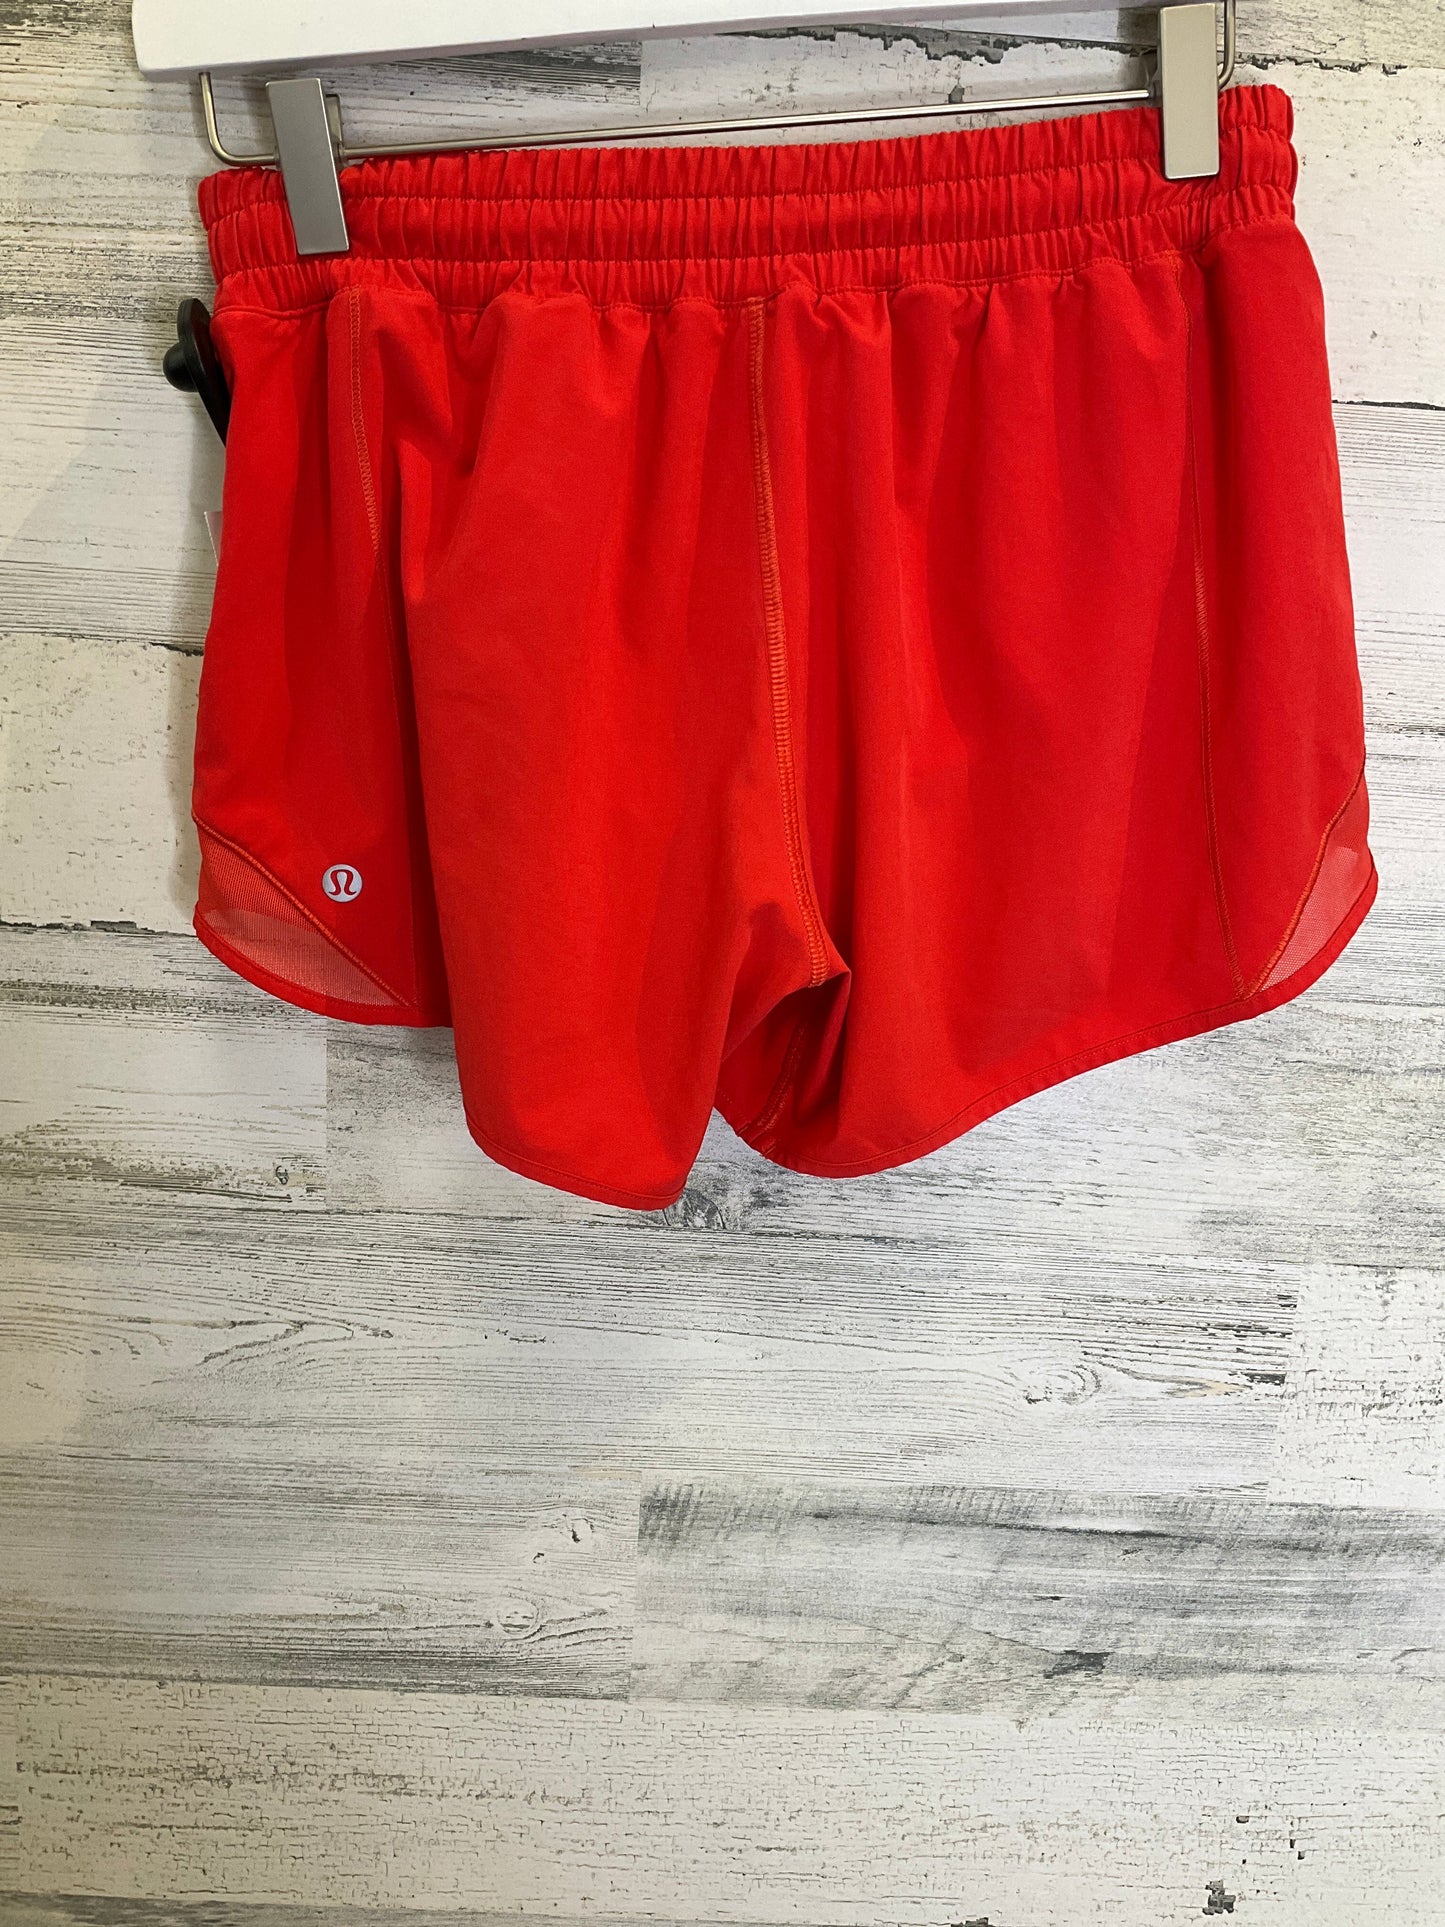 Red Athletic Shorts Lululemon, Size 6